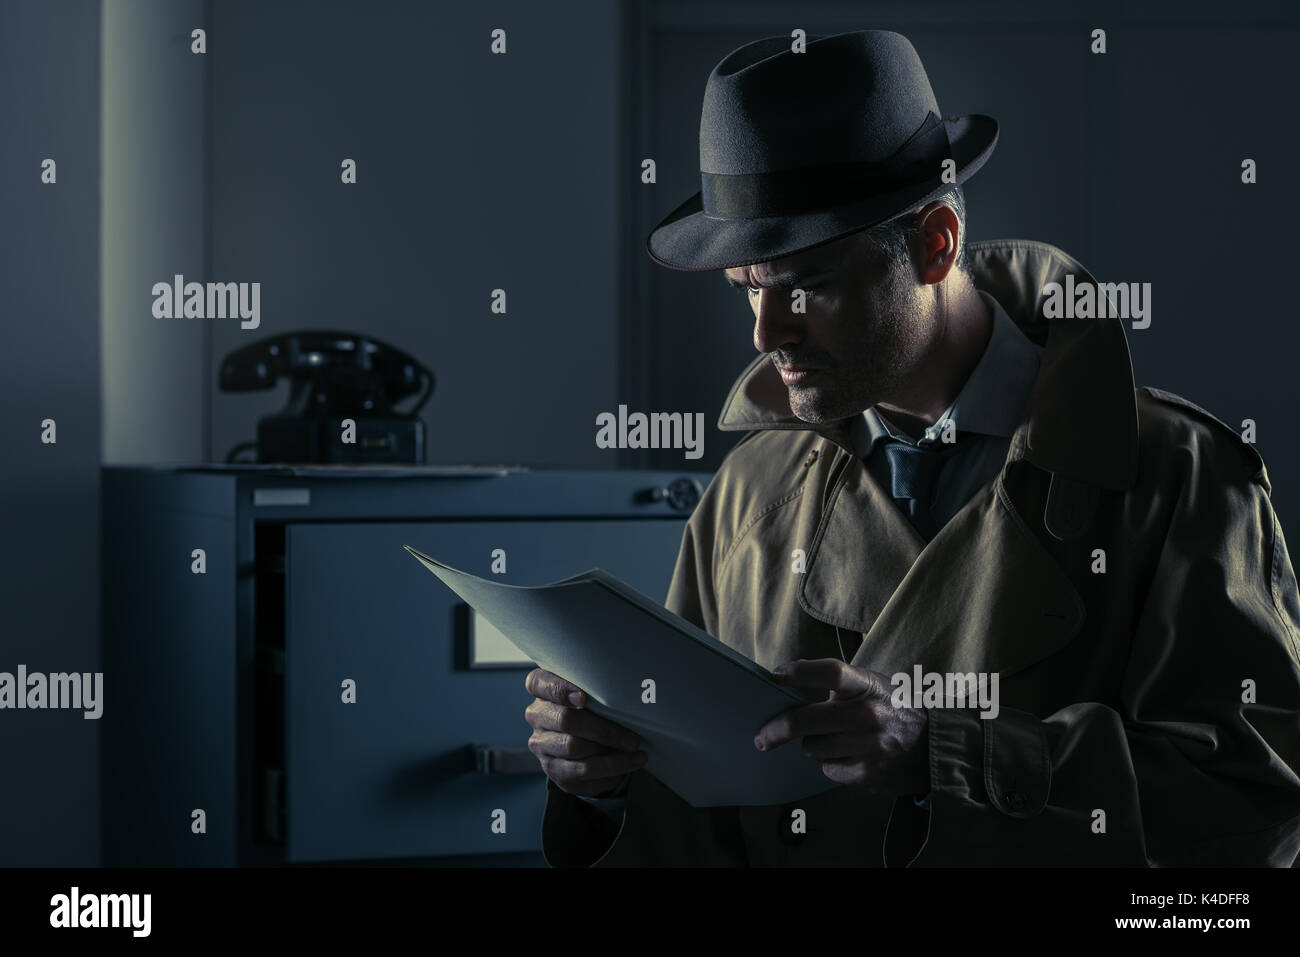 Vintage Undercover Agent Diebstahl von Dateien in einem Corporate Office spät in der Nacht, Sicherheit und Datendiebstahl Konzept Stockfoto